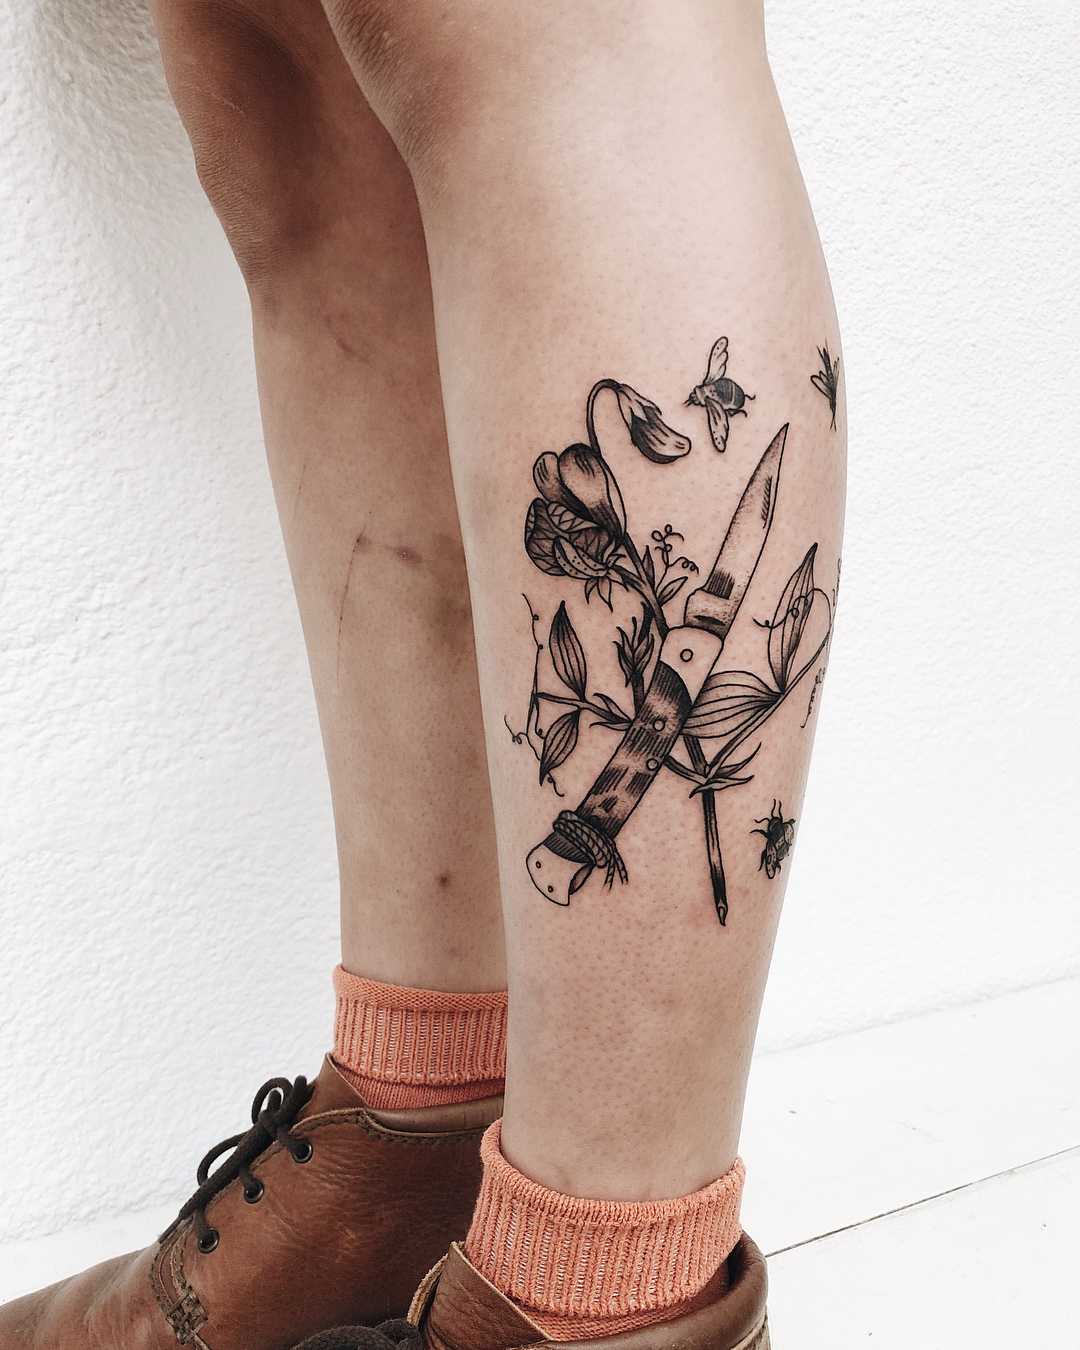 Pocketknife and flowers tattoo